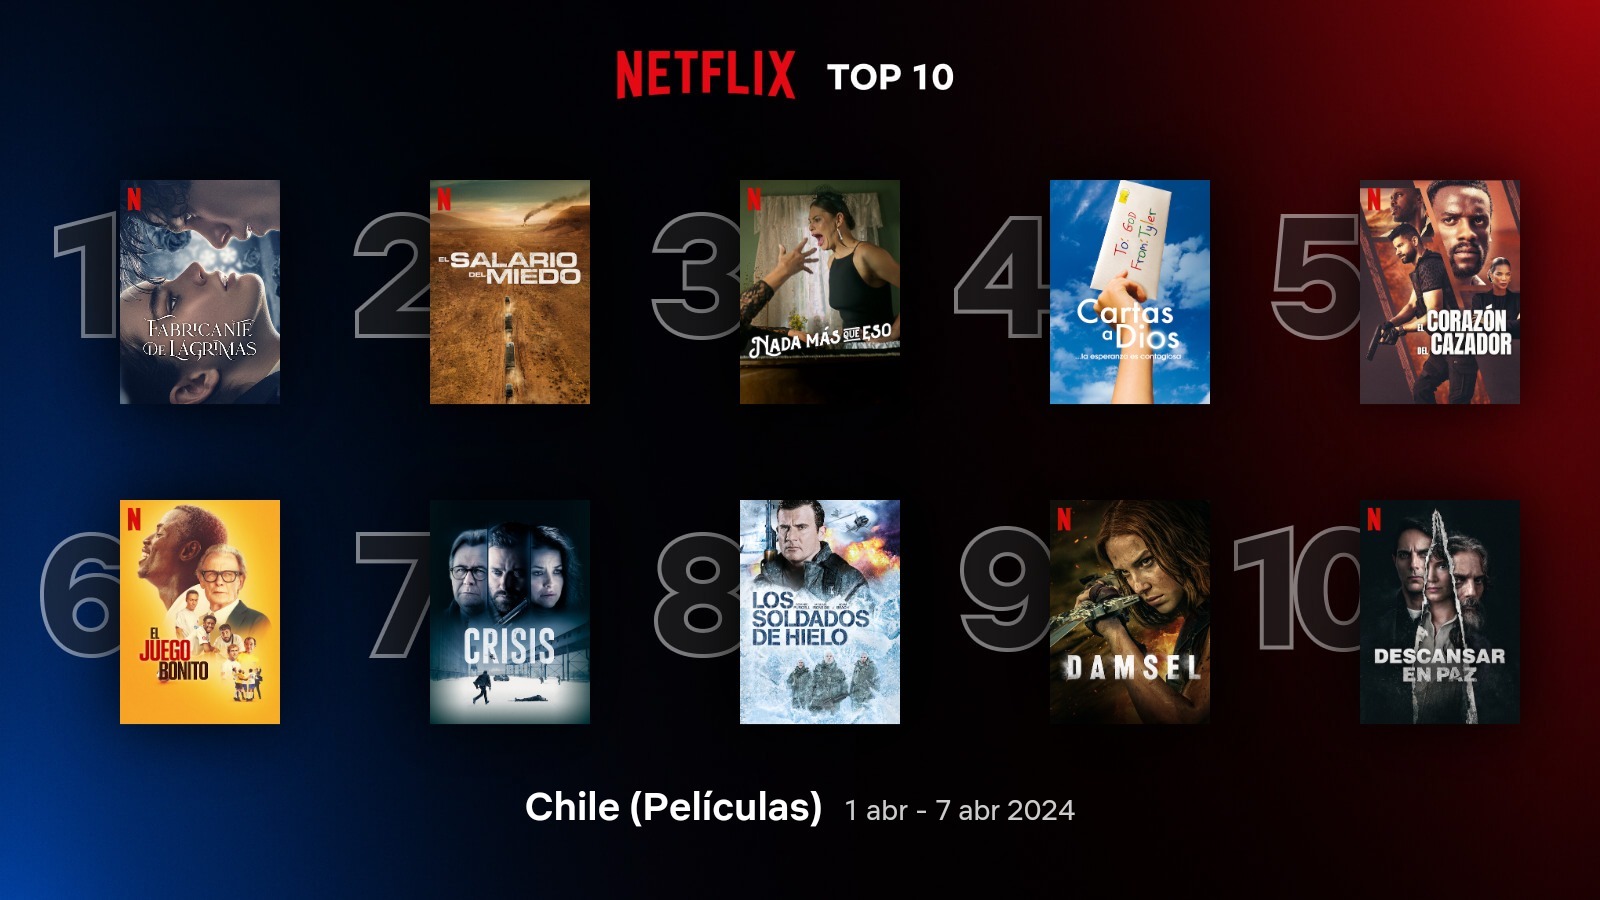 TOP 10 de películas en Chile